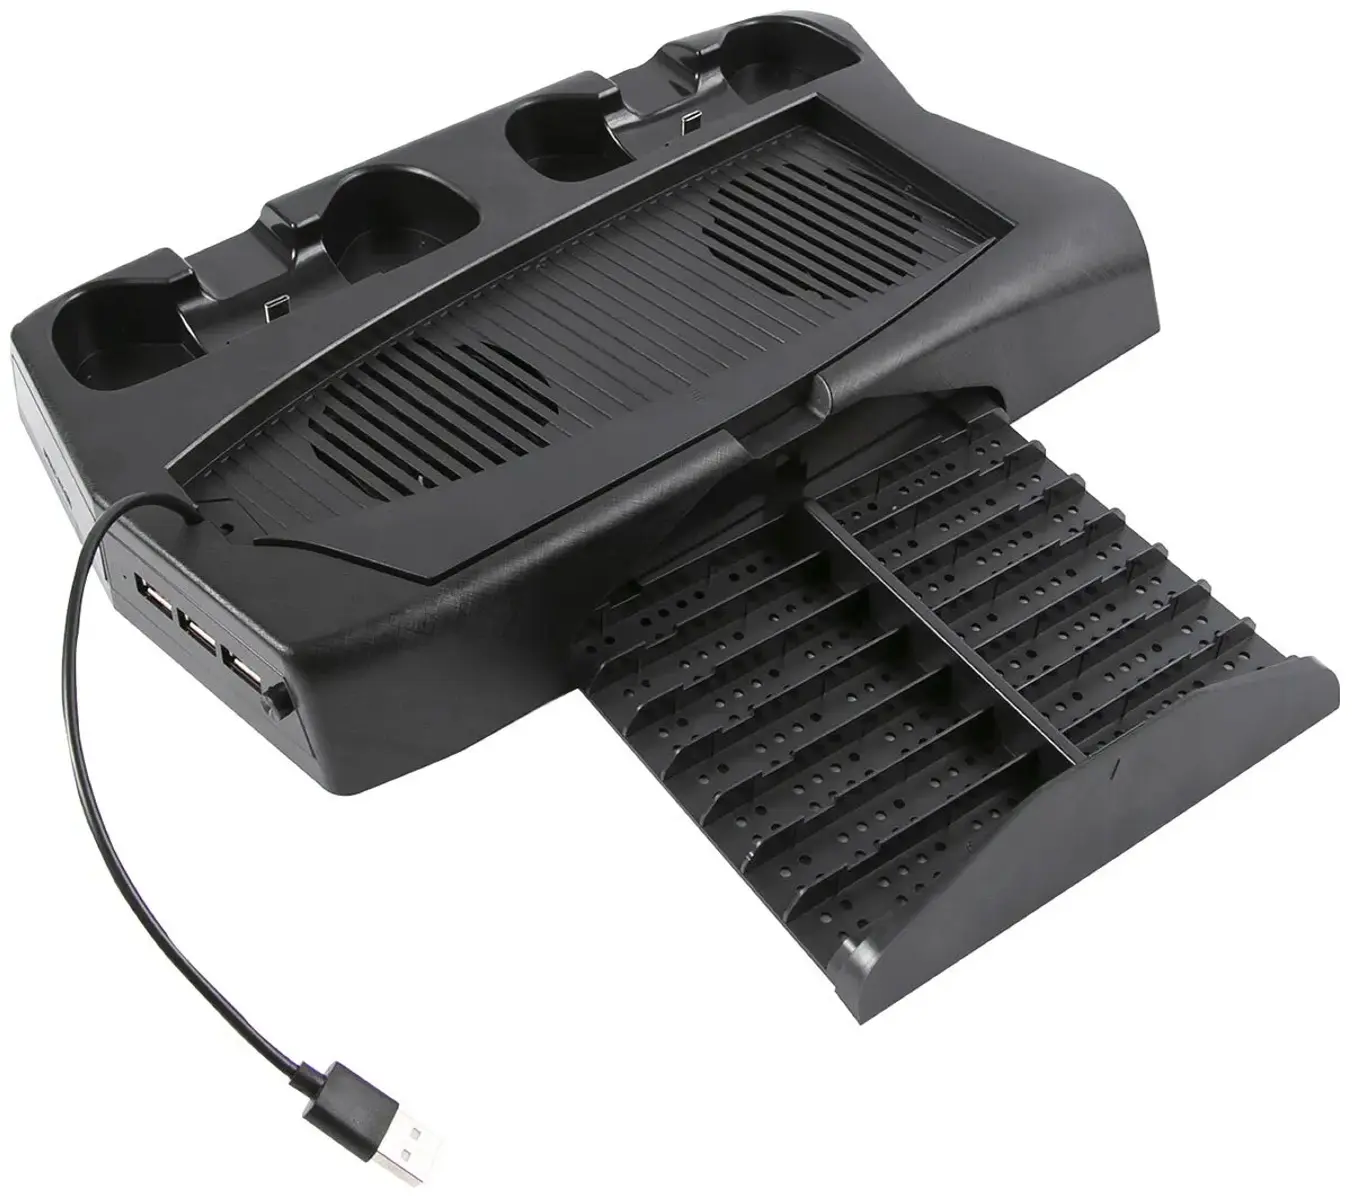  Подставка с охлаждением,вертикальная, для игровой приставки P5 DE, c двумя зар-ми док-станциями для геймпадов, черная (HS-PS5019)16300